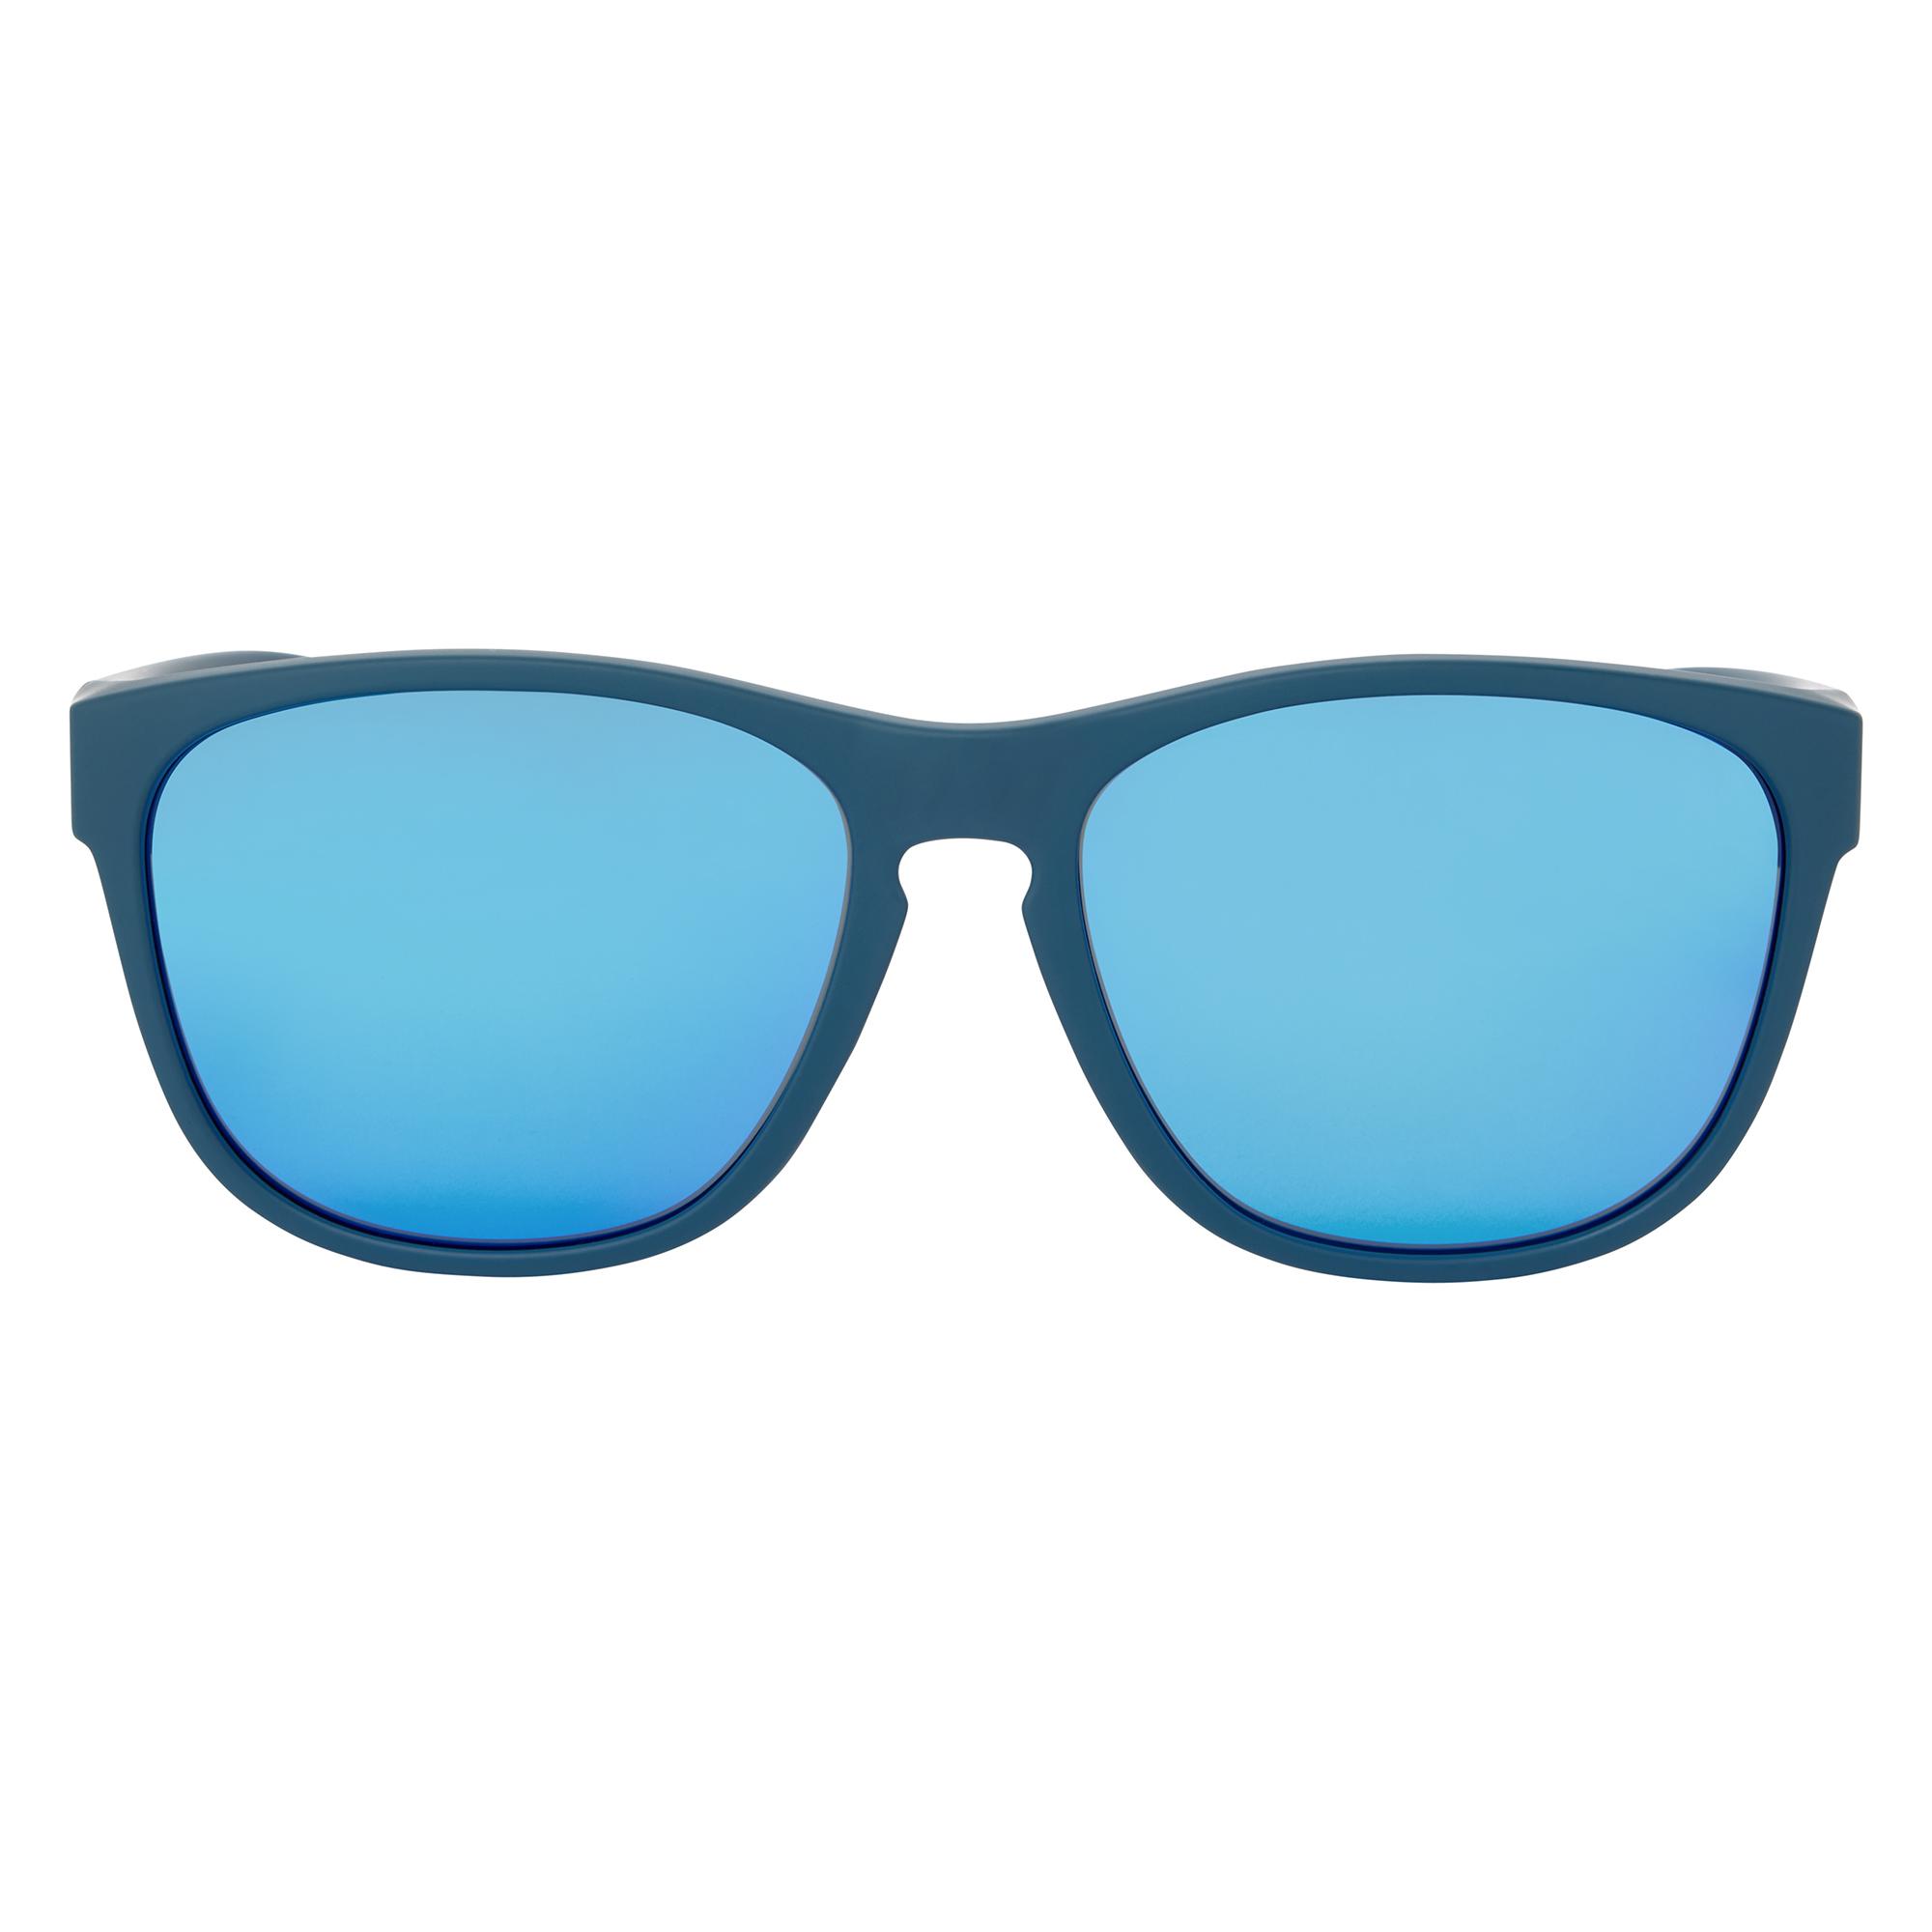 Dhb Umbra Sunglasses  Navy/blue